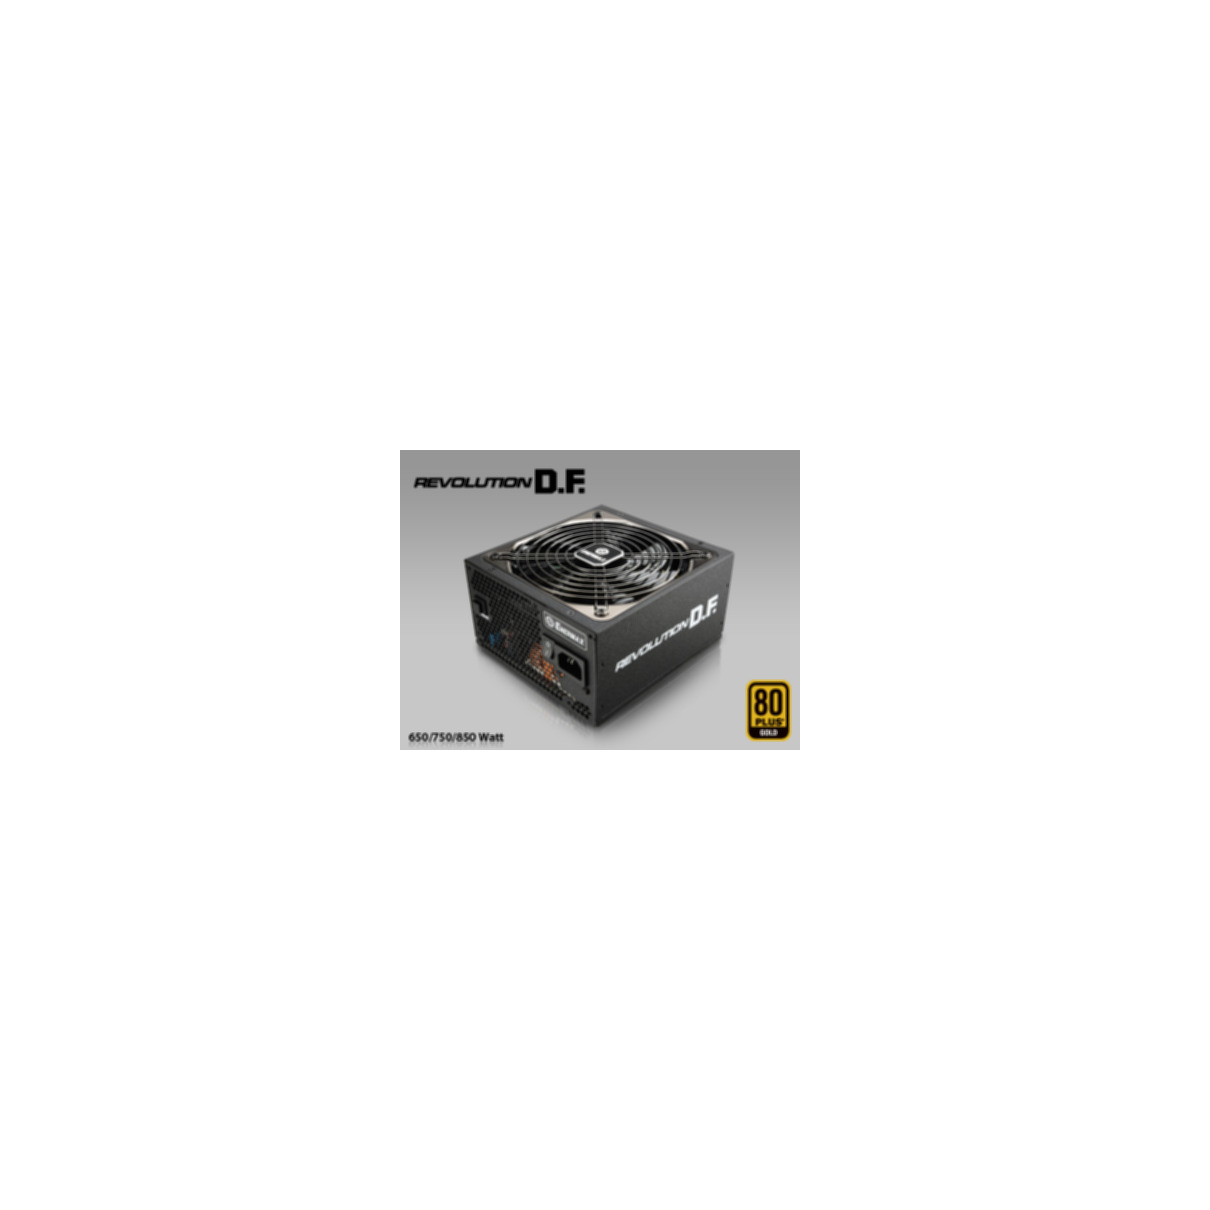 ENERMAX Revolution D.F. PC Netzteil 6, Lot 2013 Lot 3, ErP Watt 617/2013 PLUS® 750 80 2014 Gold, ErP